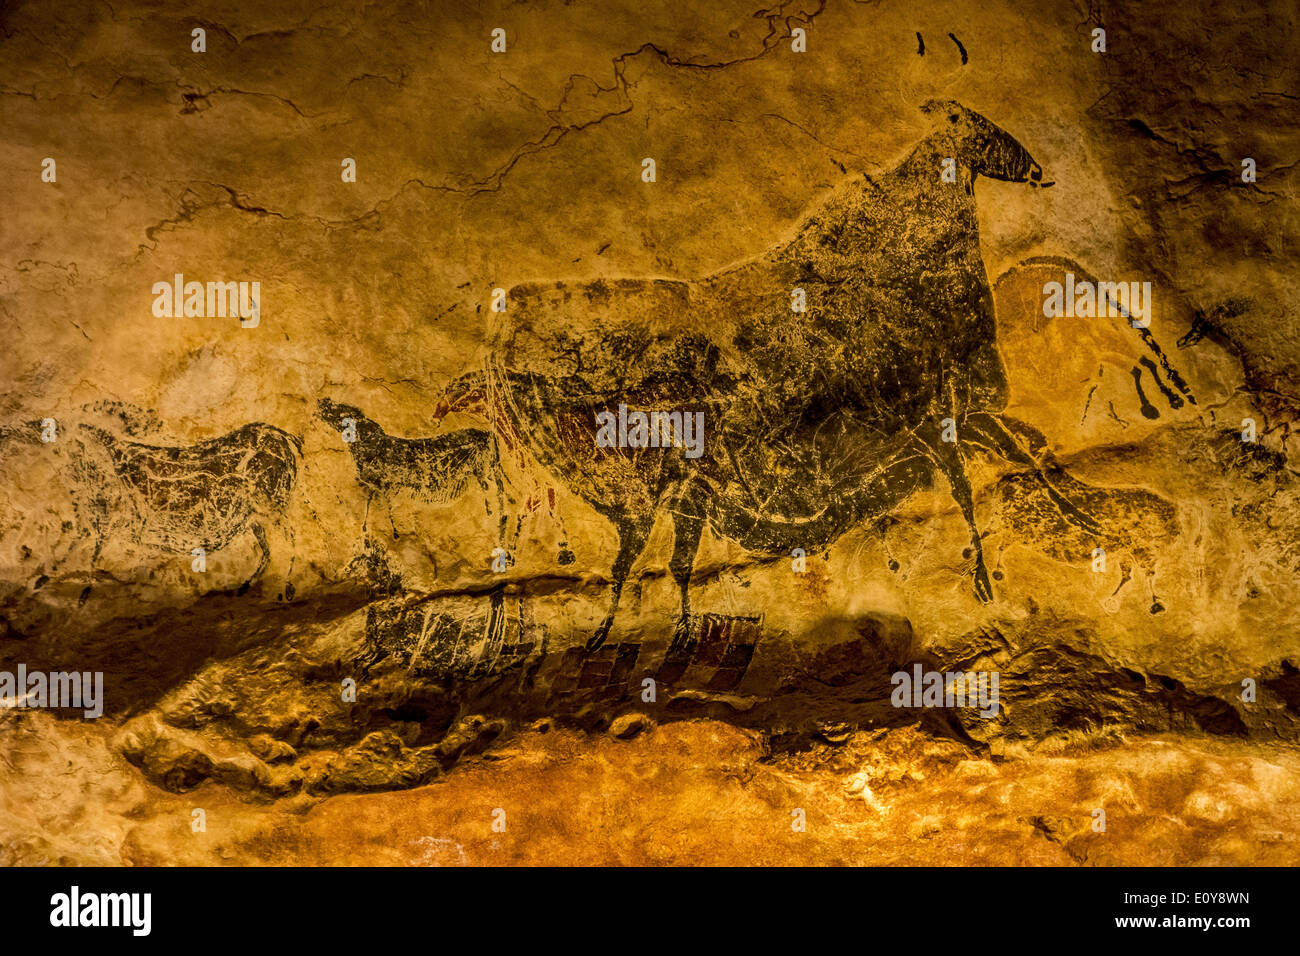 Réplique de la grotte de Lascaux montrant animaux préhistoriques comme l'aurochs et chevaux sauvages, Dordogne, France Banque D'Images